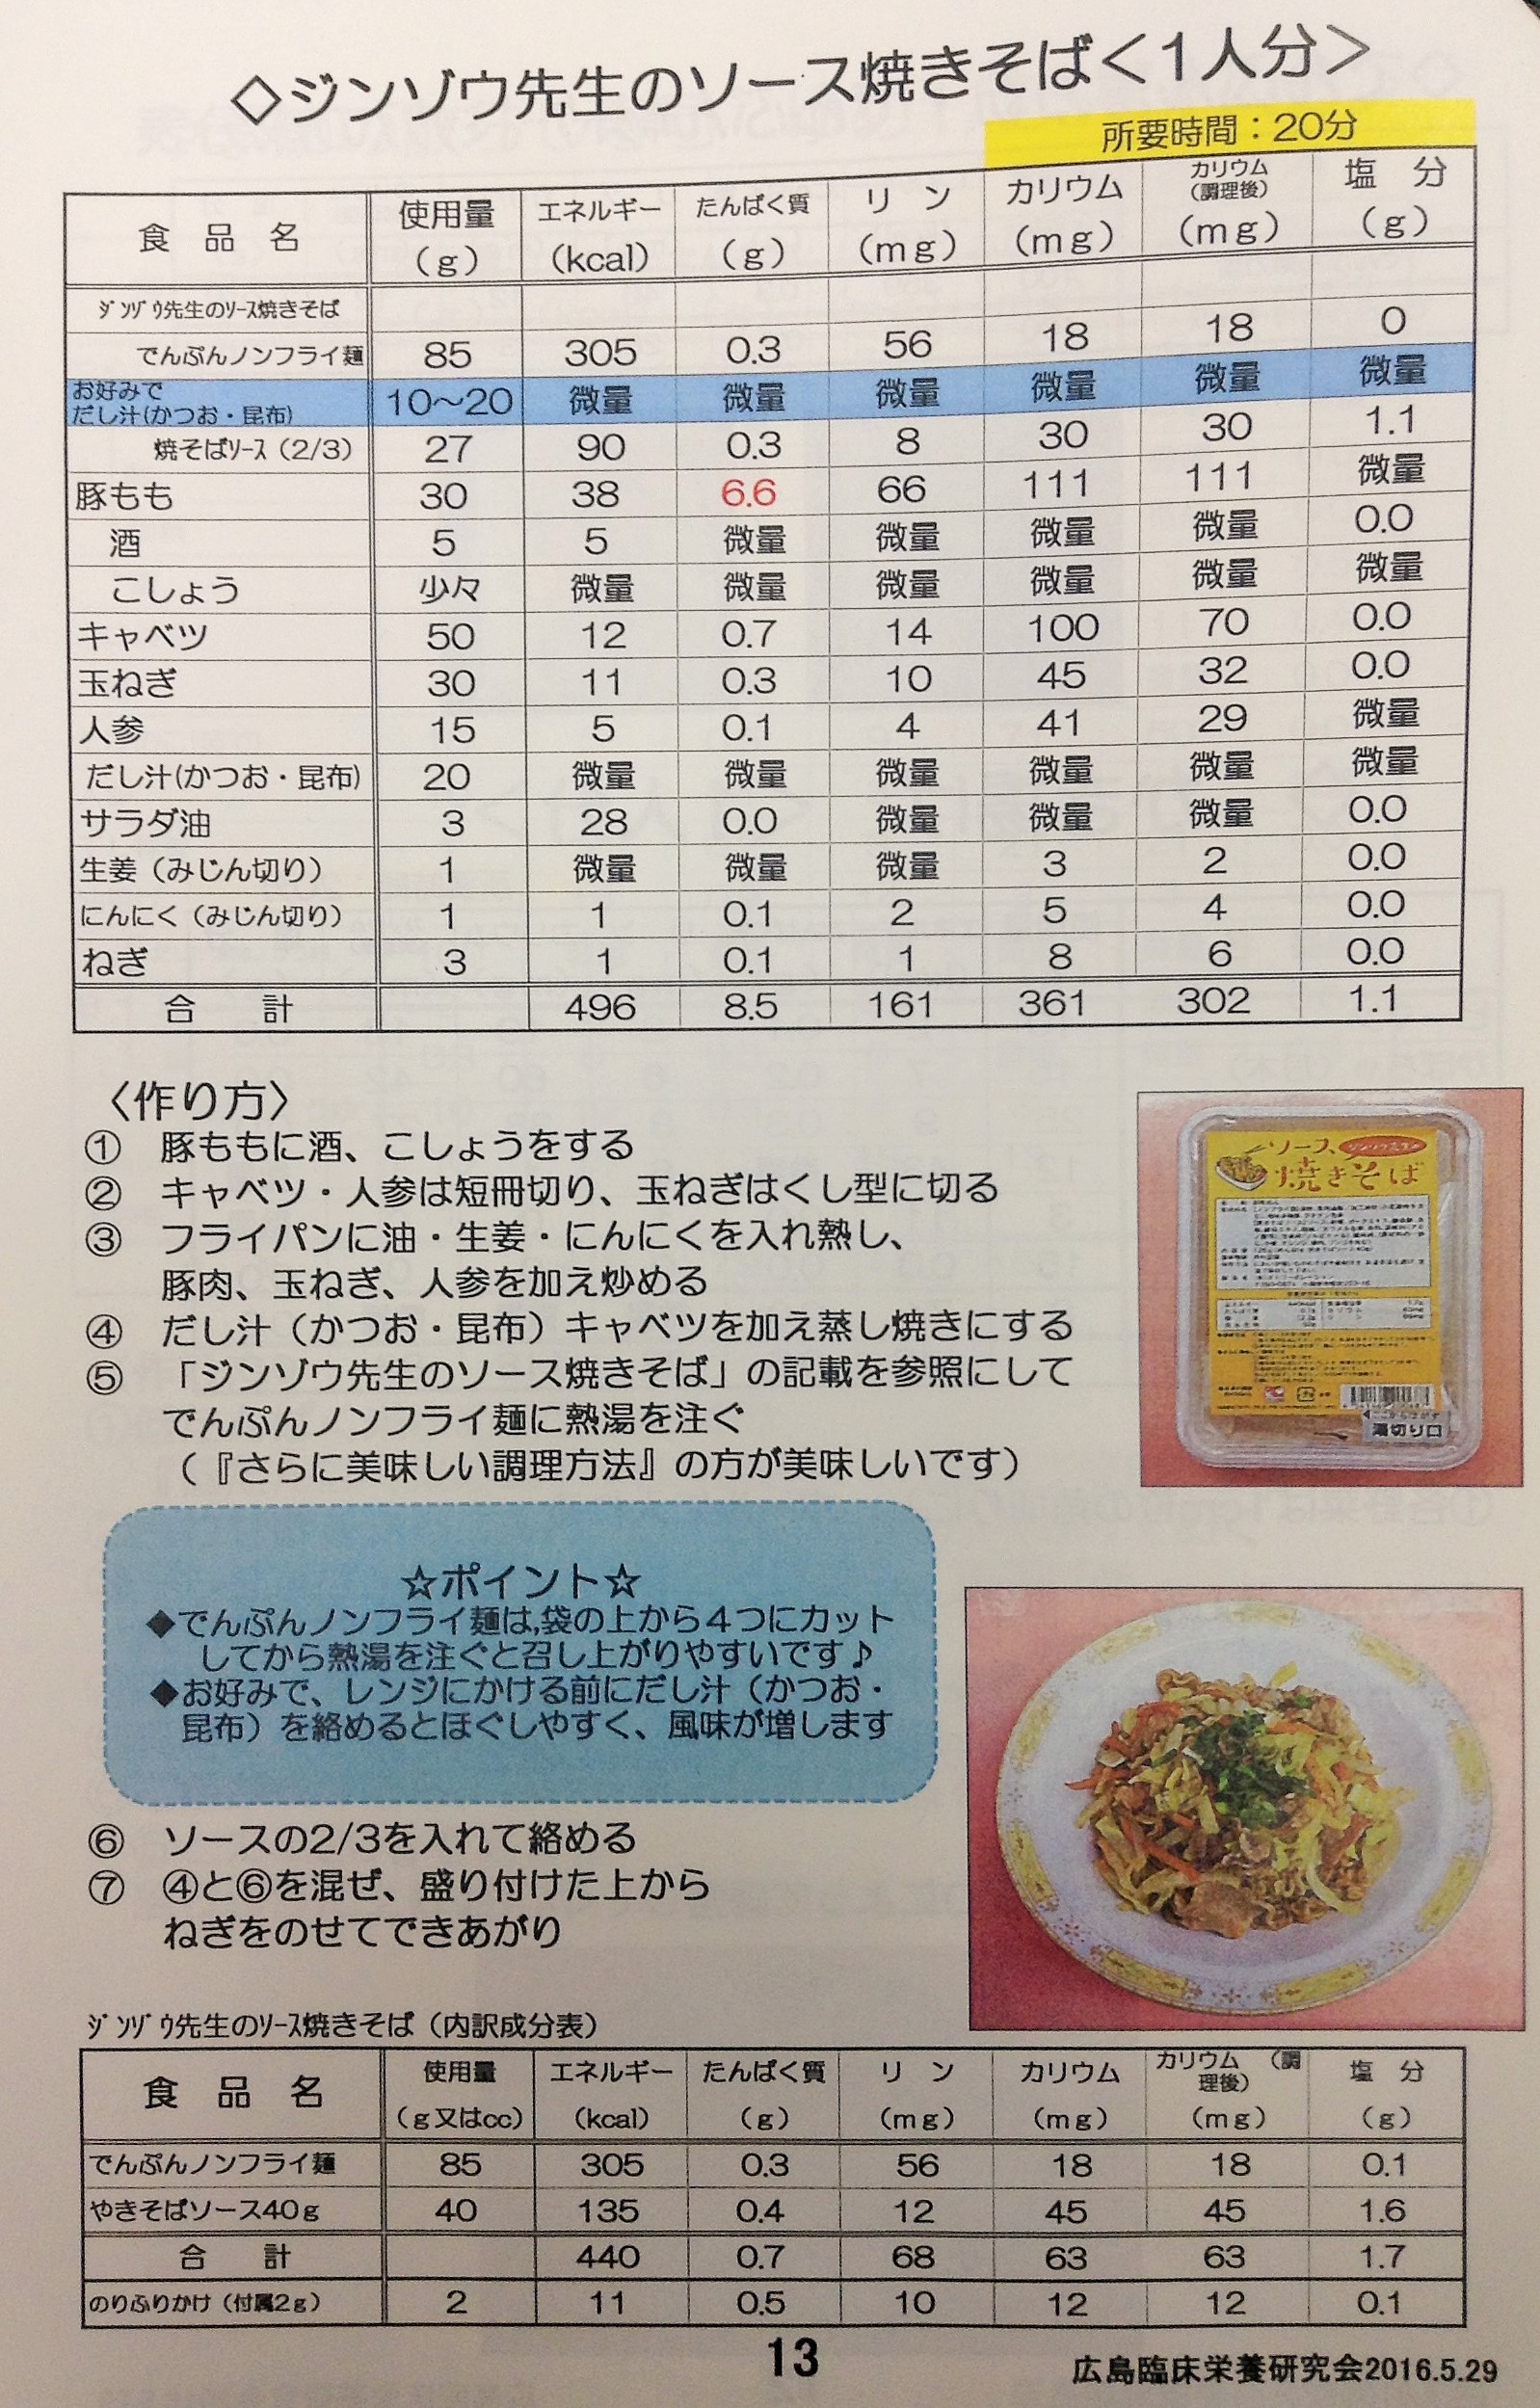 ソース焼きそば 広島臨床栄養研究会のレシピ ジンゾウ先生のオトクッキングクラブ